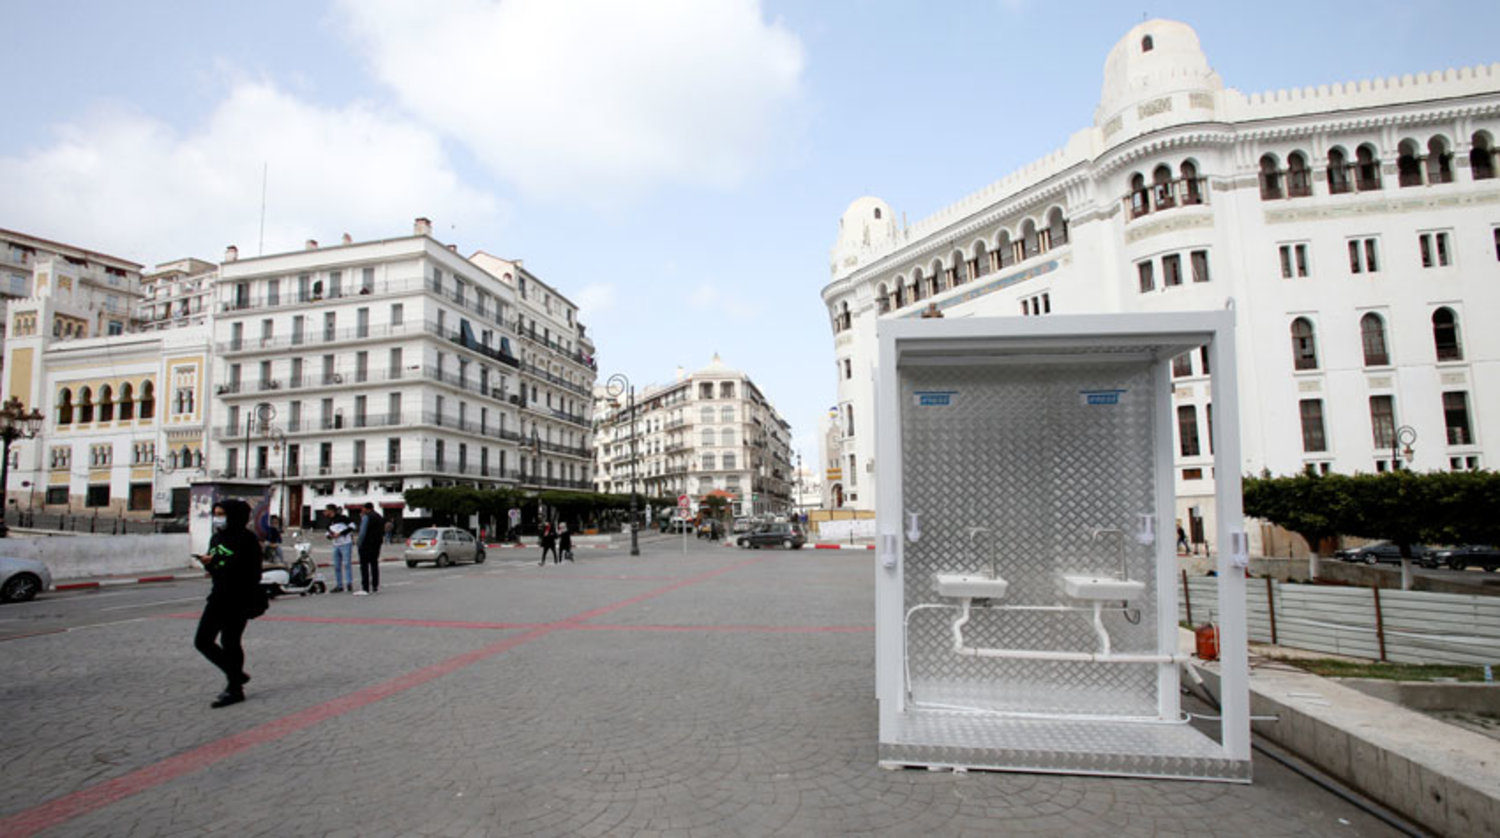 وسائل للنظافة والتعقيم وفرتها السلطات الجزائرية أمس في مدينة الجزائر (رويترز)